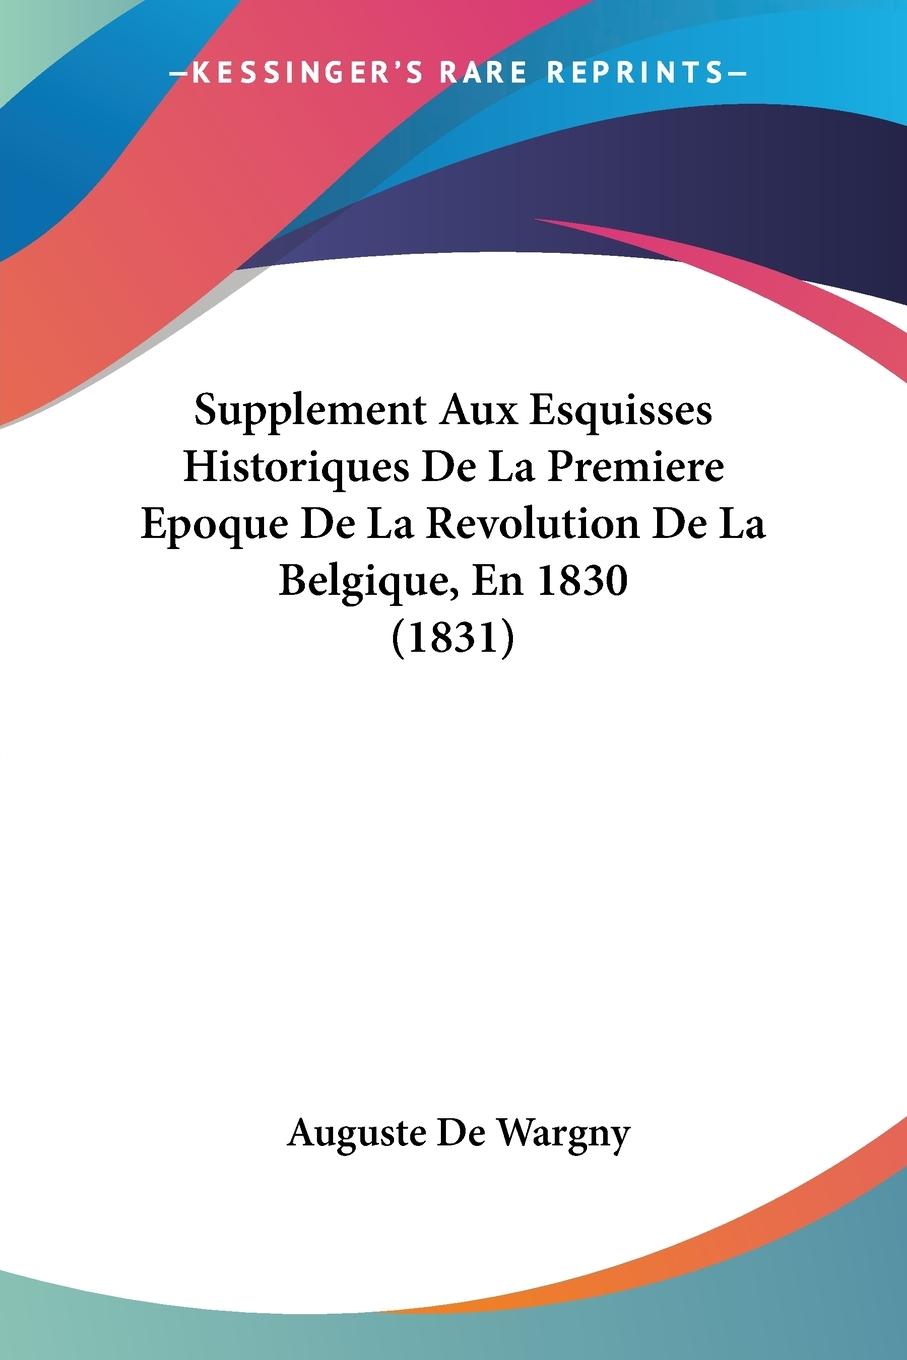 Supplement Aux Esquisses Historiques De La Premiere Epoque De La Revolution De La Belgique, En 1830 (1831) - De Wargny, Auguste